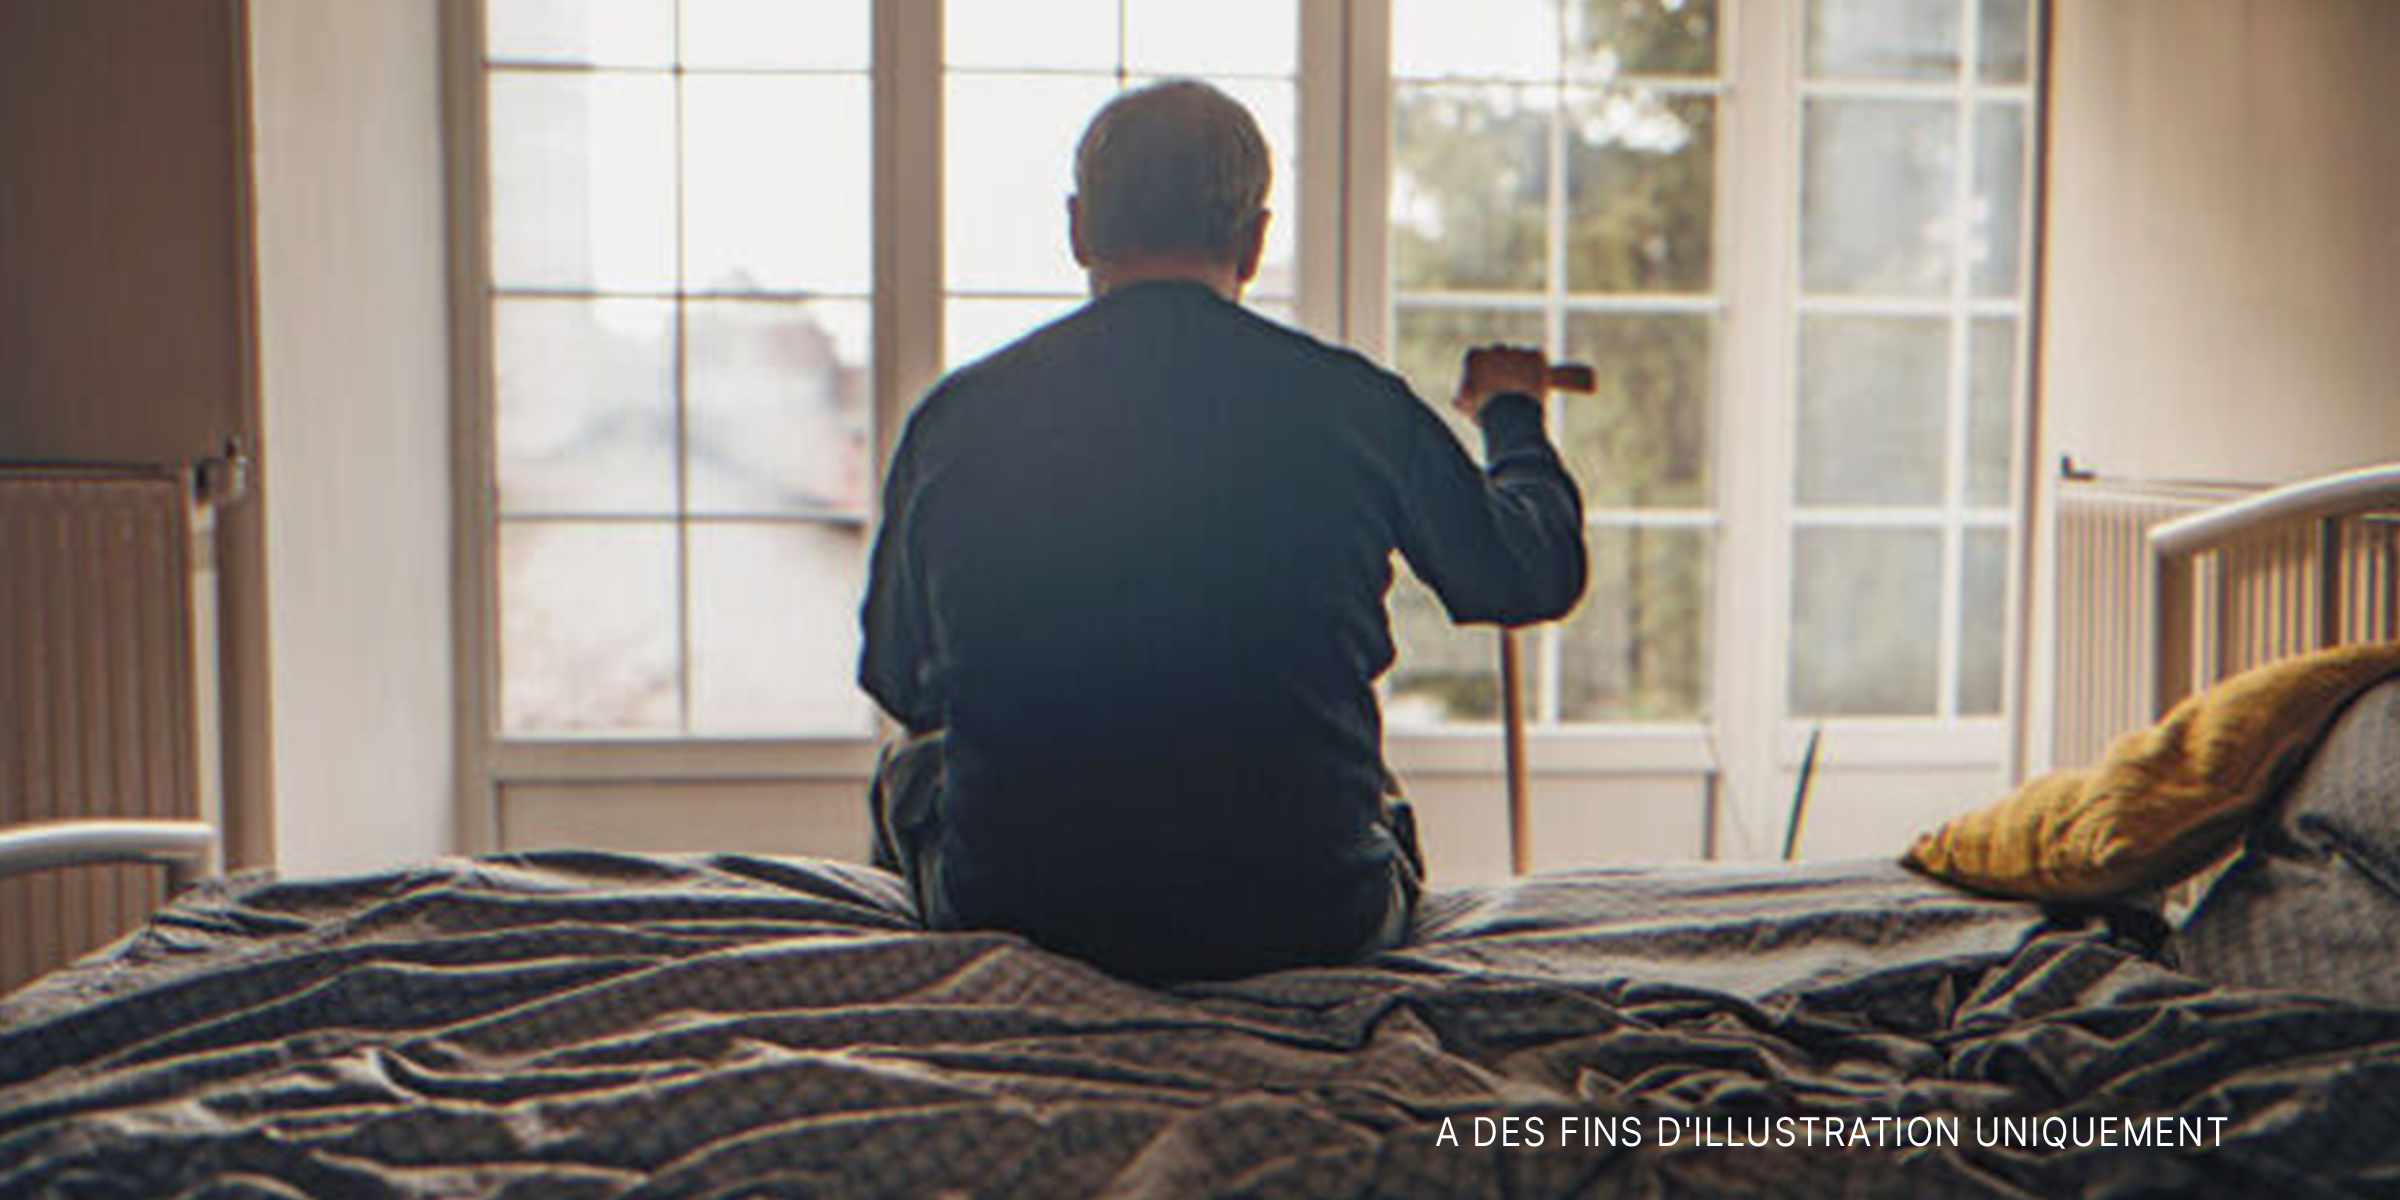 Vieil homme assis dans un lit, regardant par la fenêtre | Source : Getty Images